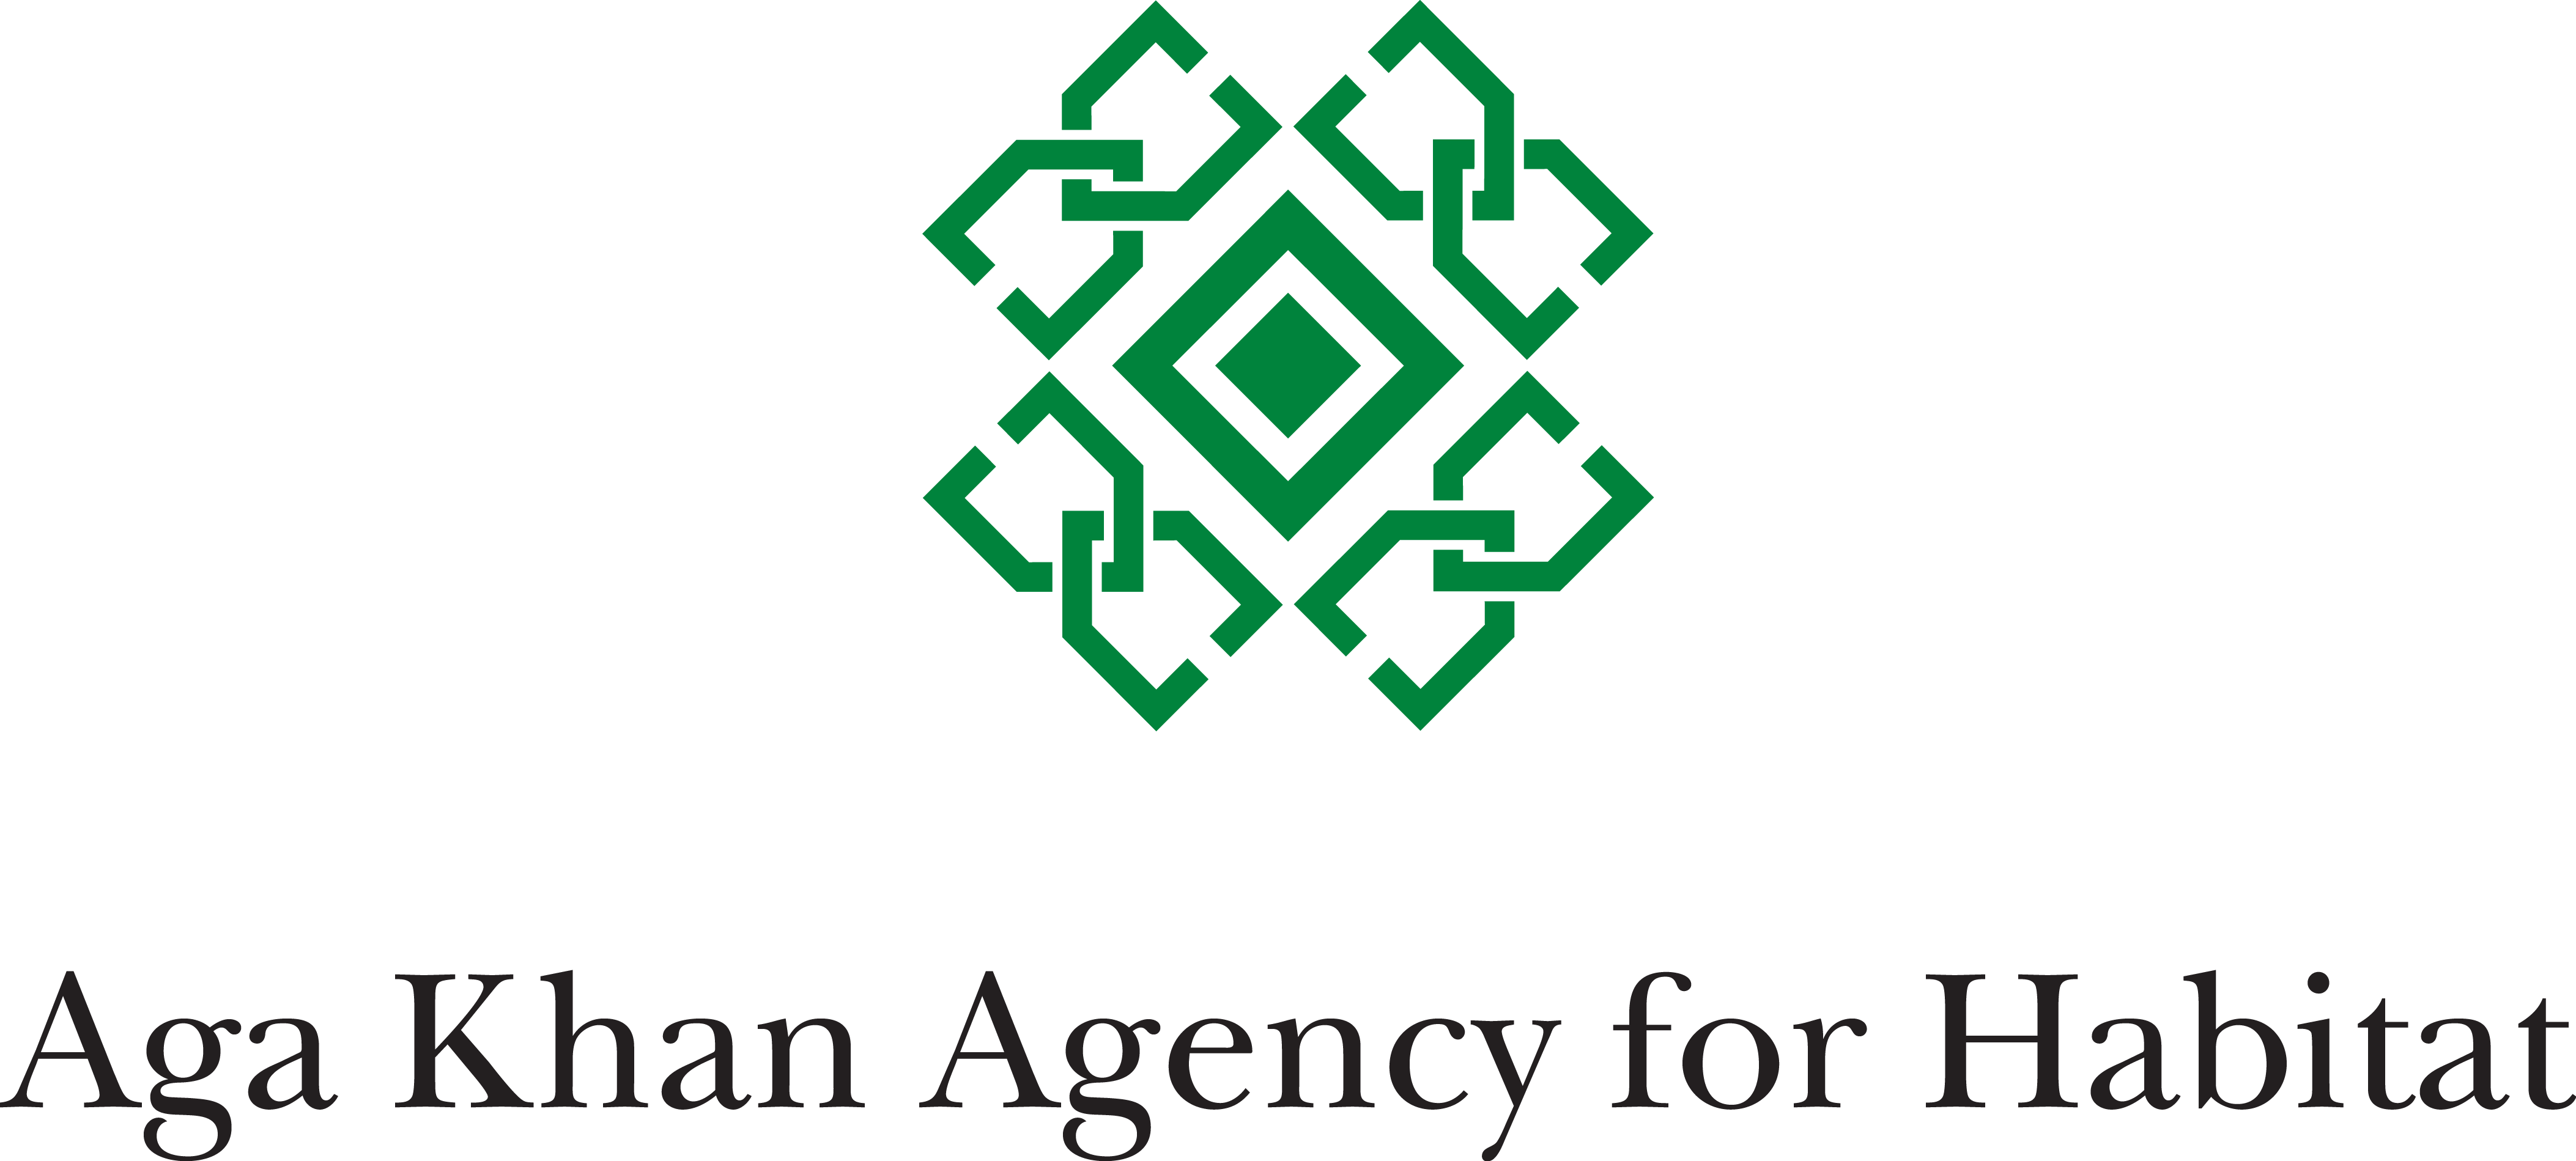 Фонд ага хана. Aga Khan Agency for Habitat logo. Агентства ага хана Хабитат. Логотип AKDN. Фонд ага-хана logo.